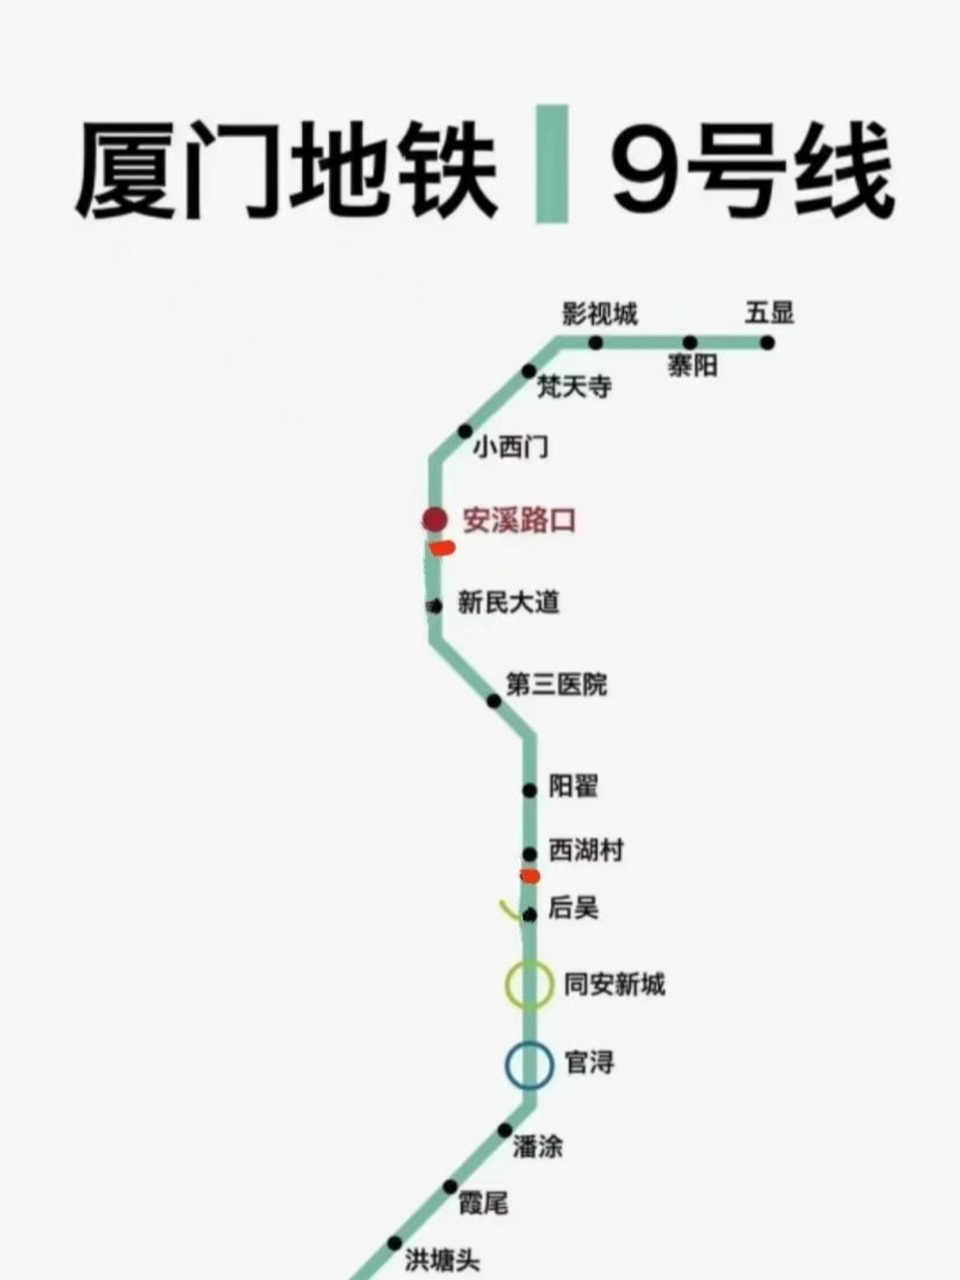 9号线地铁站线路图图片